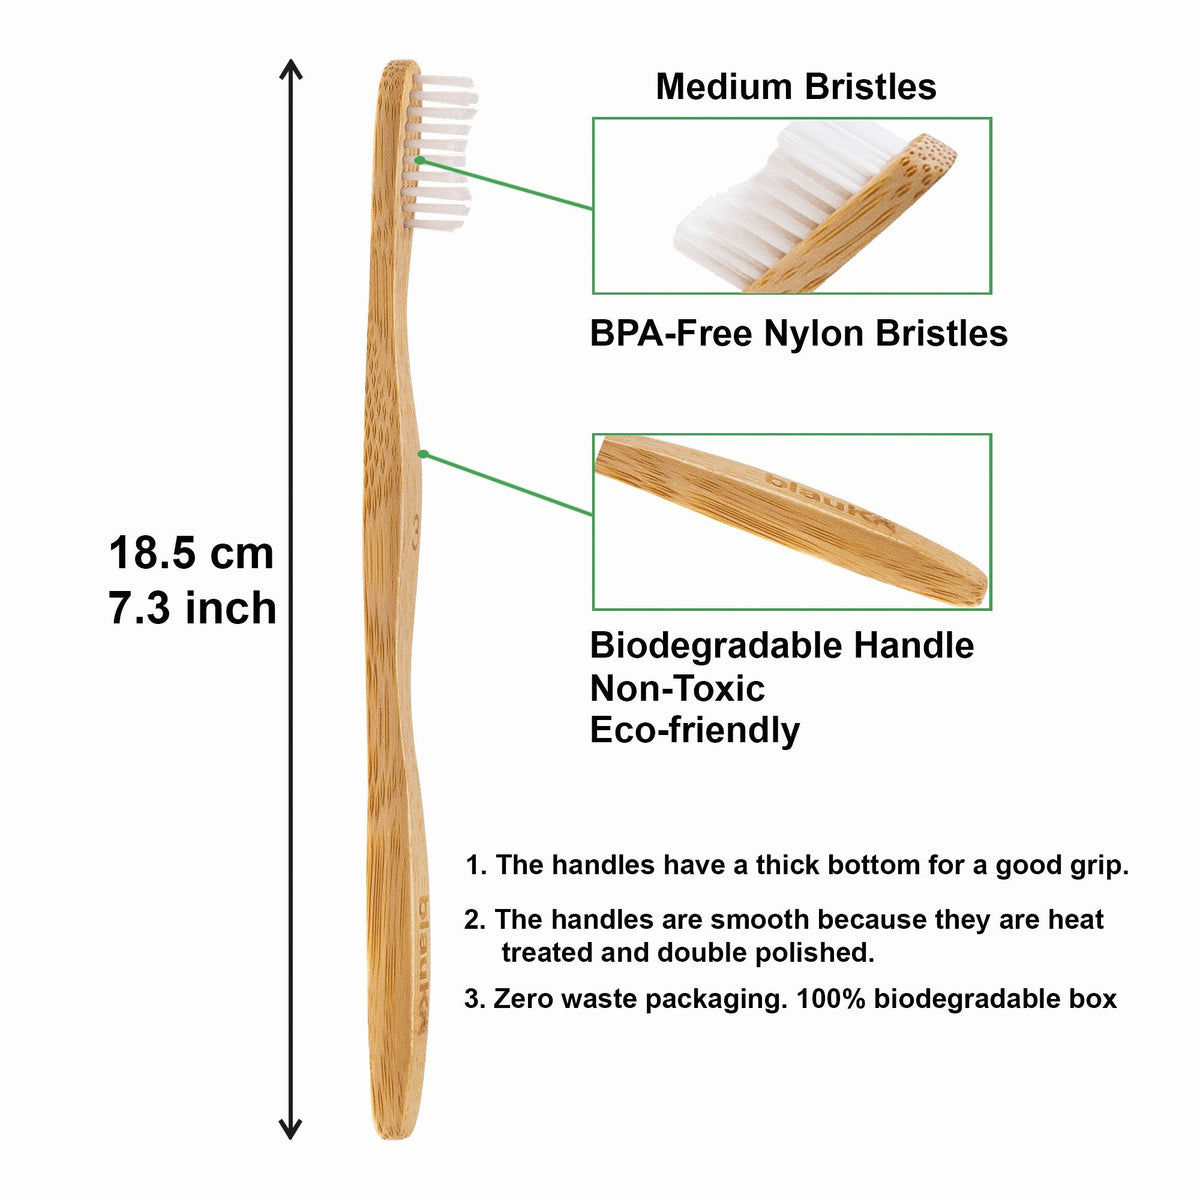 Bamboo Toothbrush Set 5-Pack - Bamboo Toothbrushes Medium Bristles